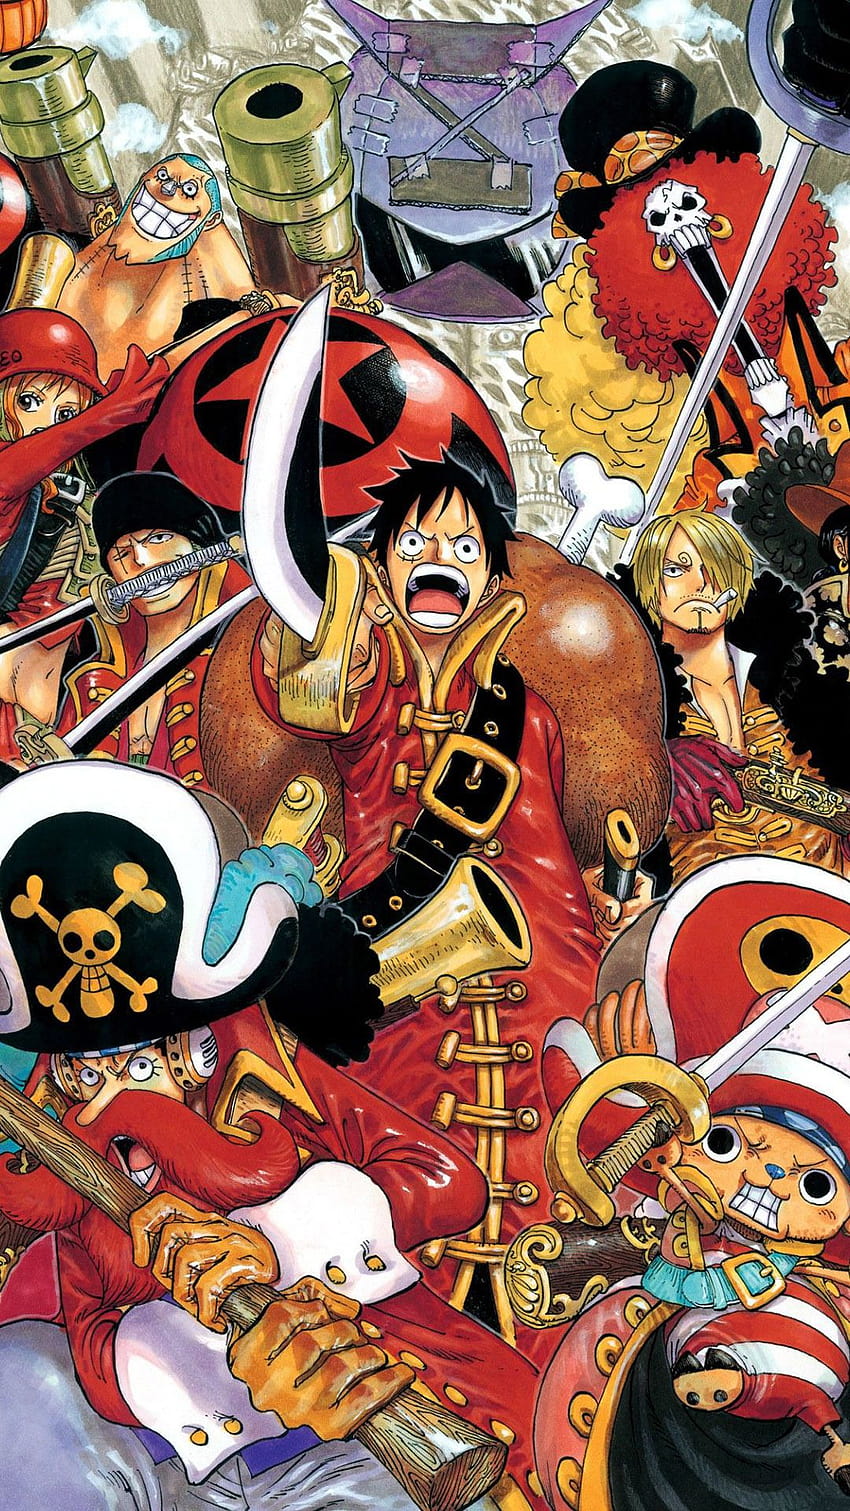 One Piece không chỉ là một bộ manga nổi tiếng, mà còn là một nguồn cảm hứng để tạo ra những hình nền tuyệt đẹp cho điện thoại của bạn. Chúng tôi đã sưu tầm những hình nền One Piece cho iPhone với nhiều phong cách khác nhau để bạn có thể tìm thấy một mẫu thích hợp với mình.